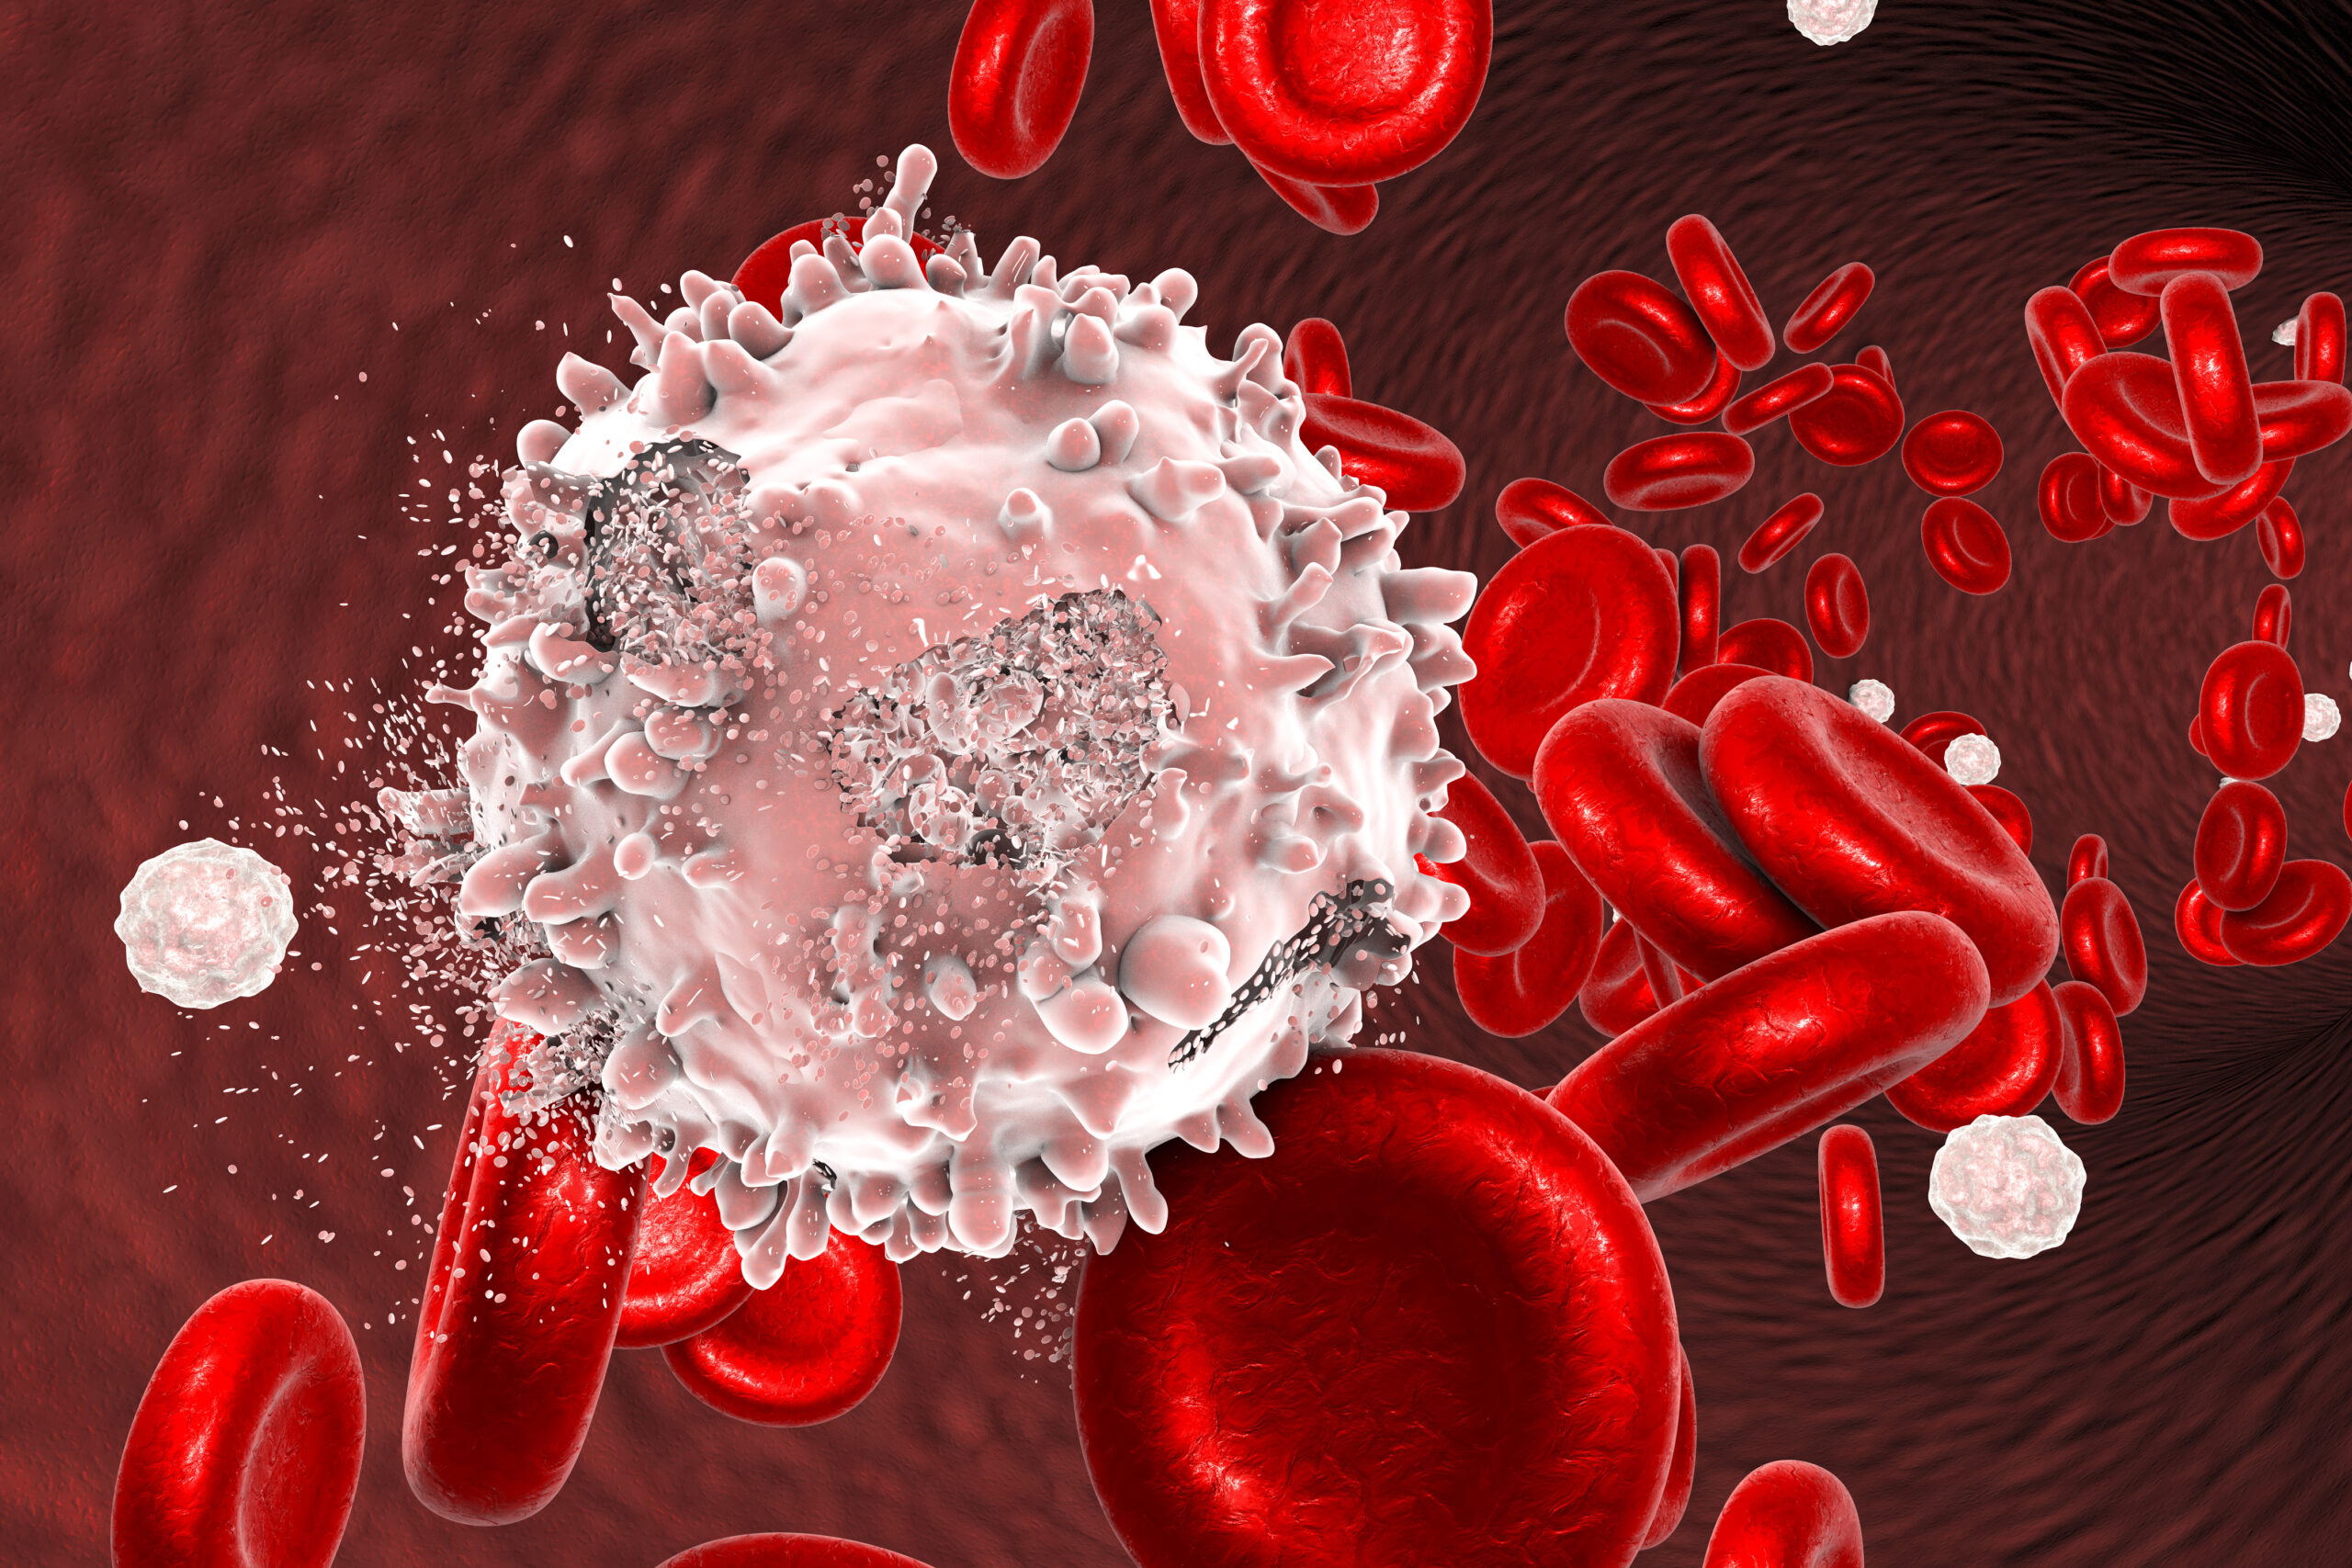 Destruction de cellule leucémique, image conceptuelle. Illustration 3D qui peut être utilisée pour illustrer le traitement du cancer du sang